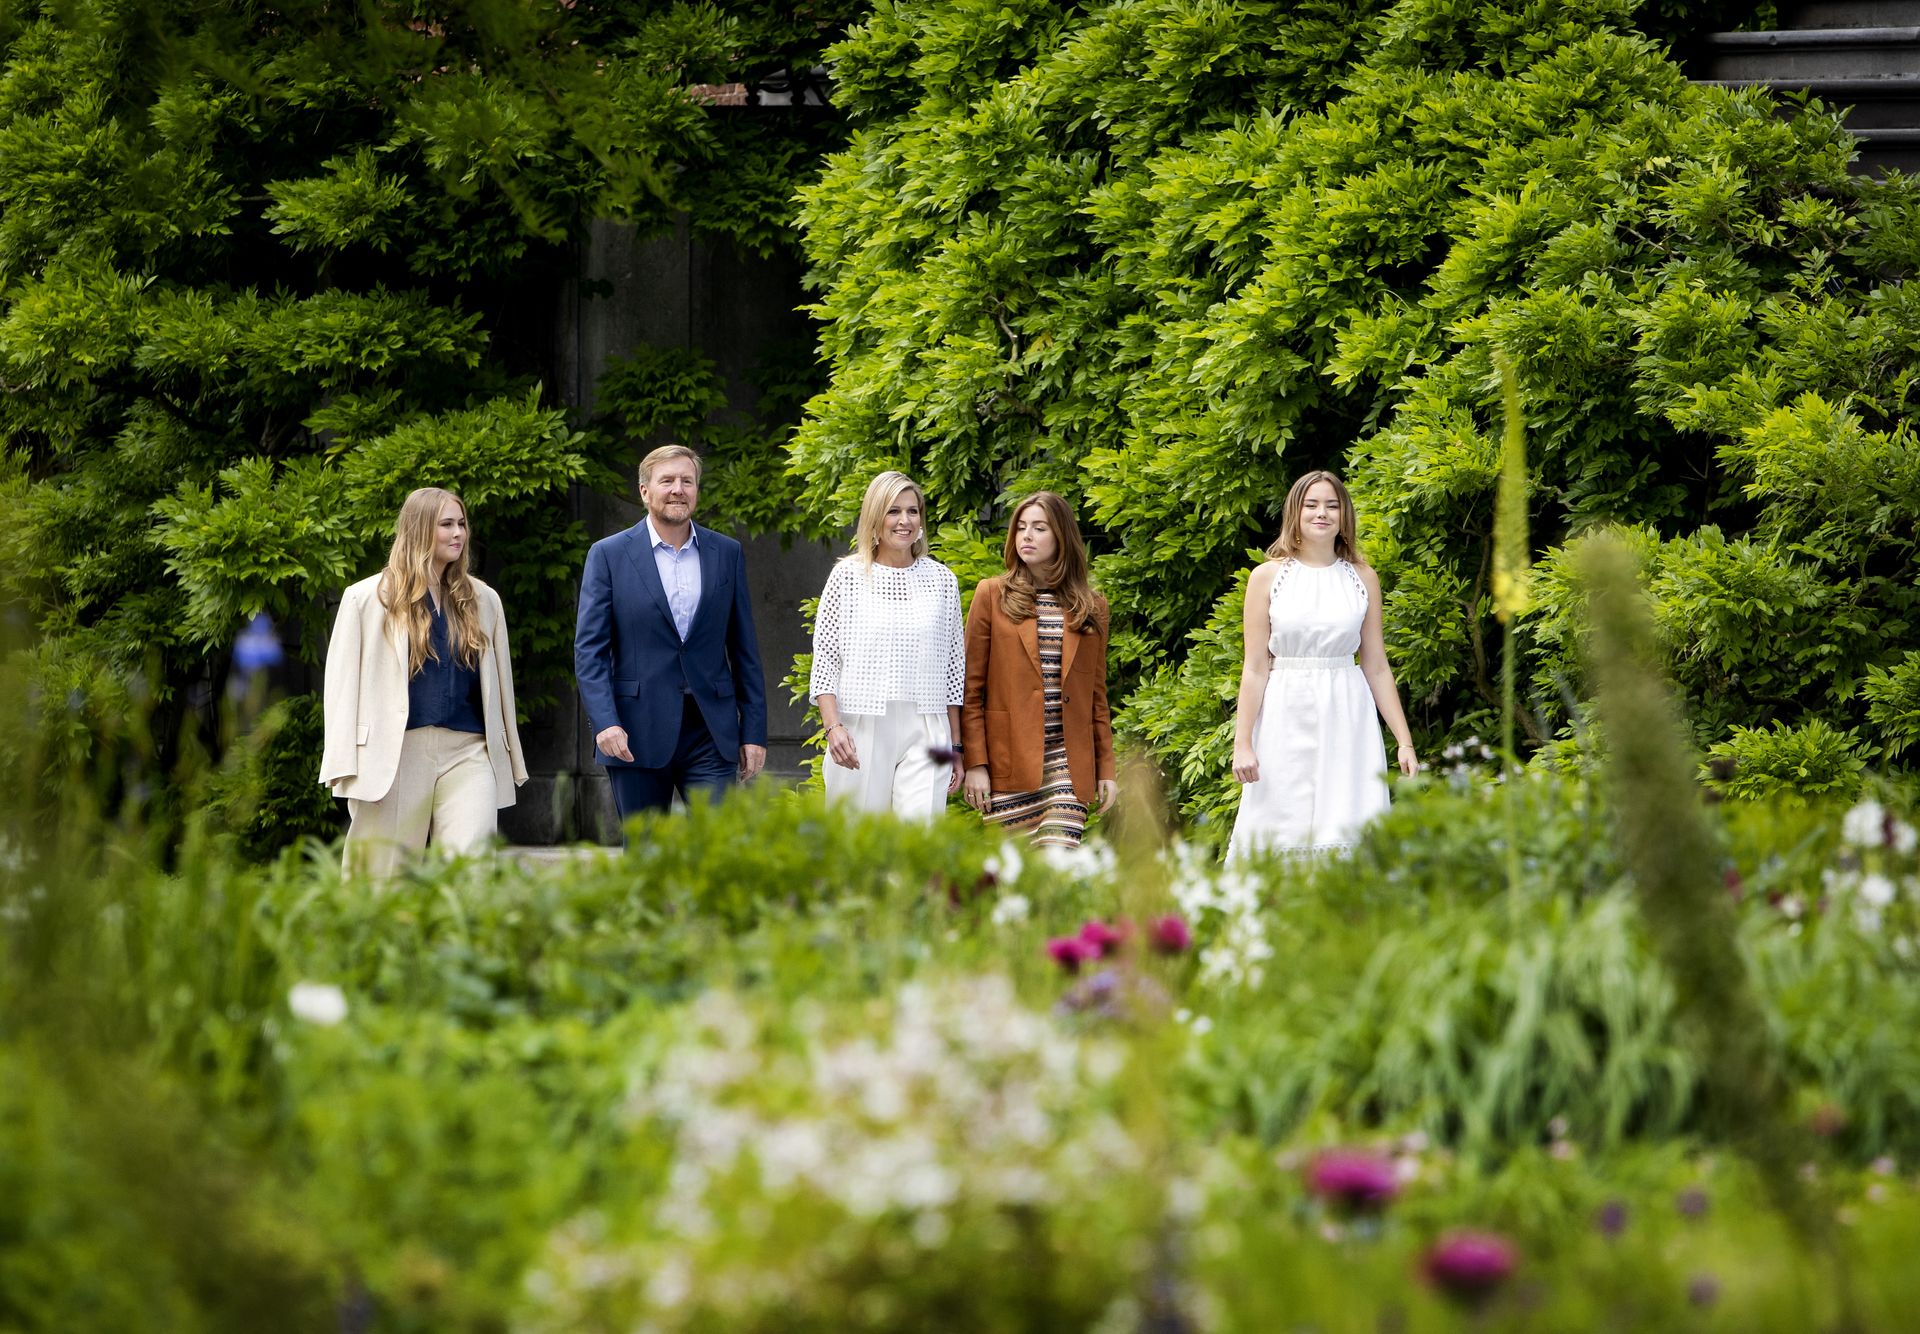 Koning Willem-Alexander en koningin Maxima samen met prinsessen Amalia, Alexia en Ariane.